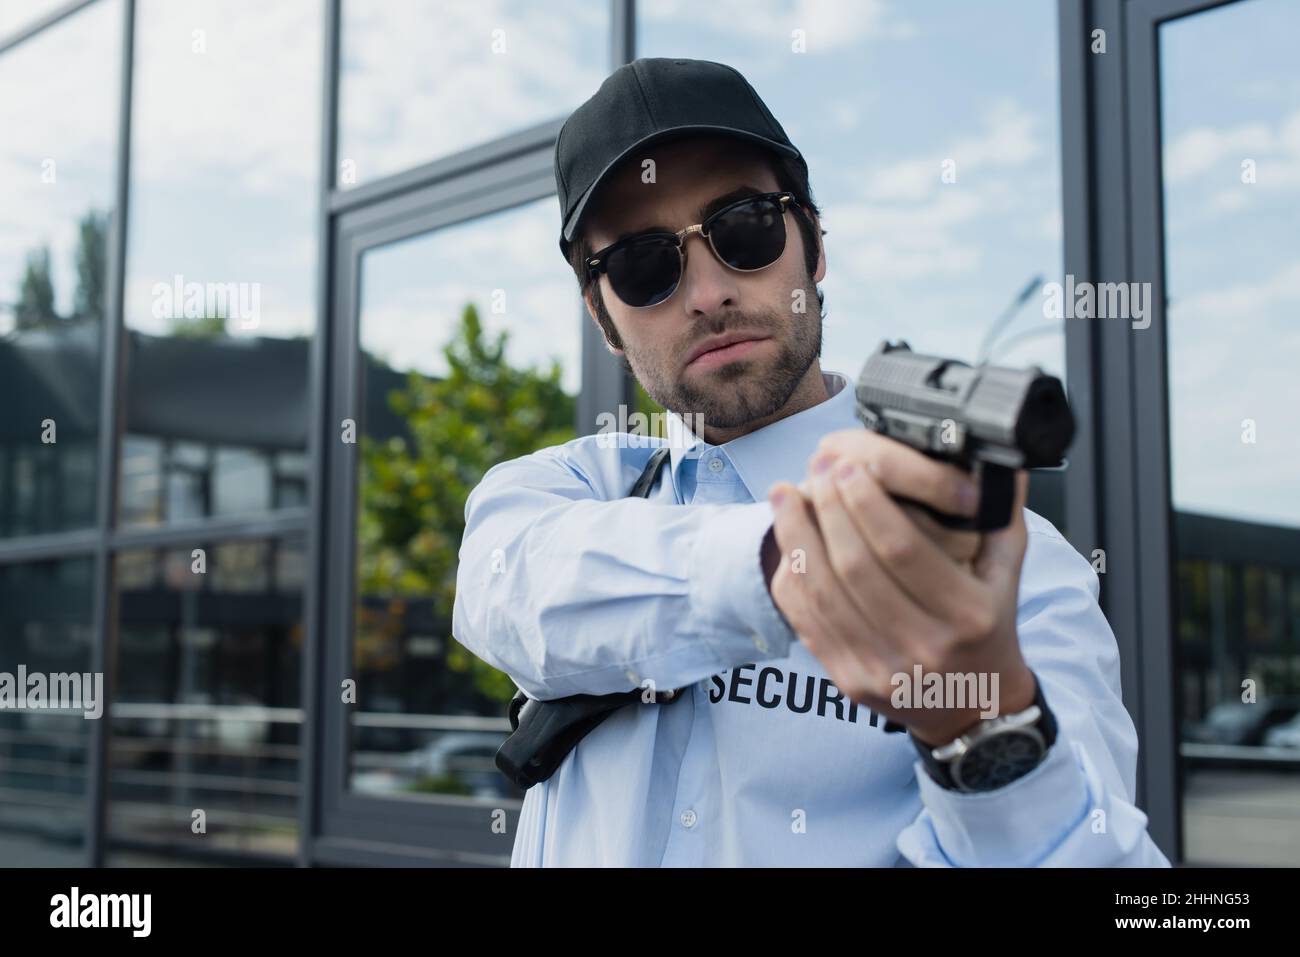 protezione giovane in uniforme, cappuccio nero e occhiali da sole in piedi con pistola all'aperto Foto Stock